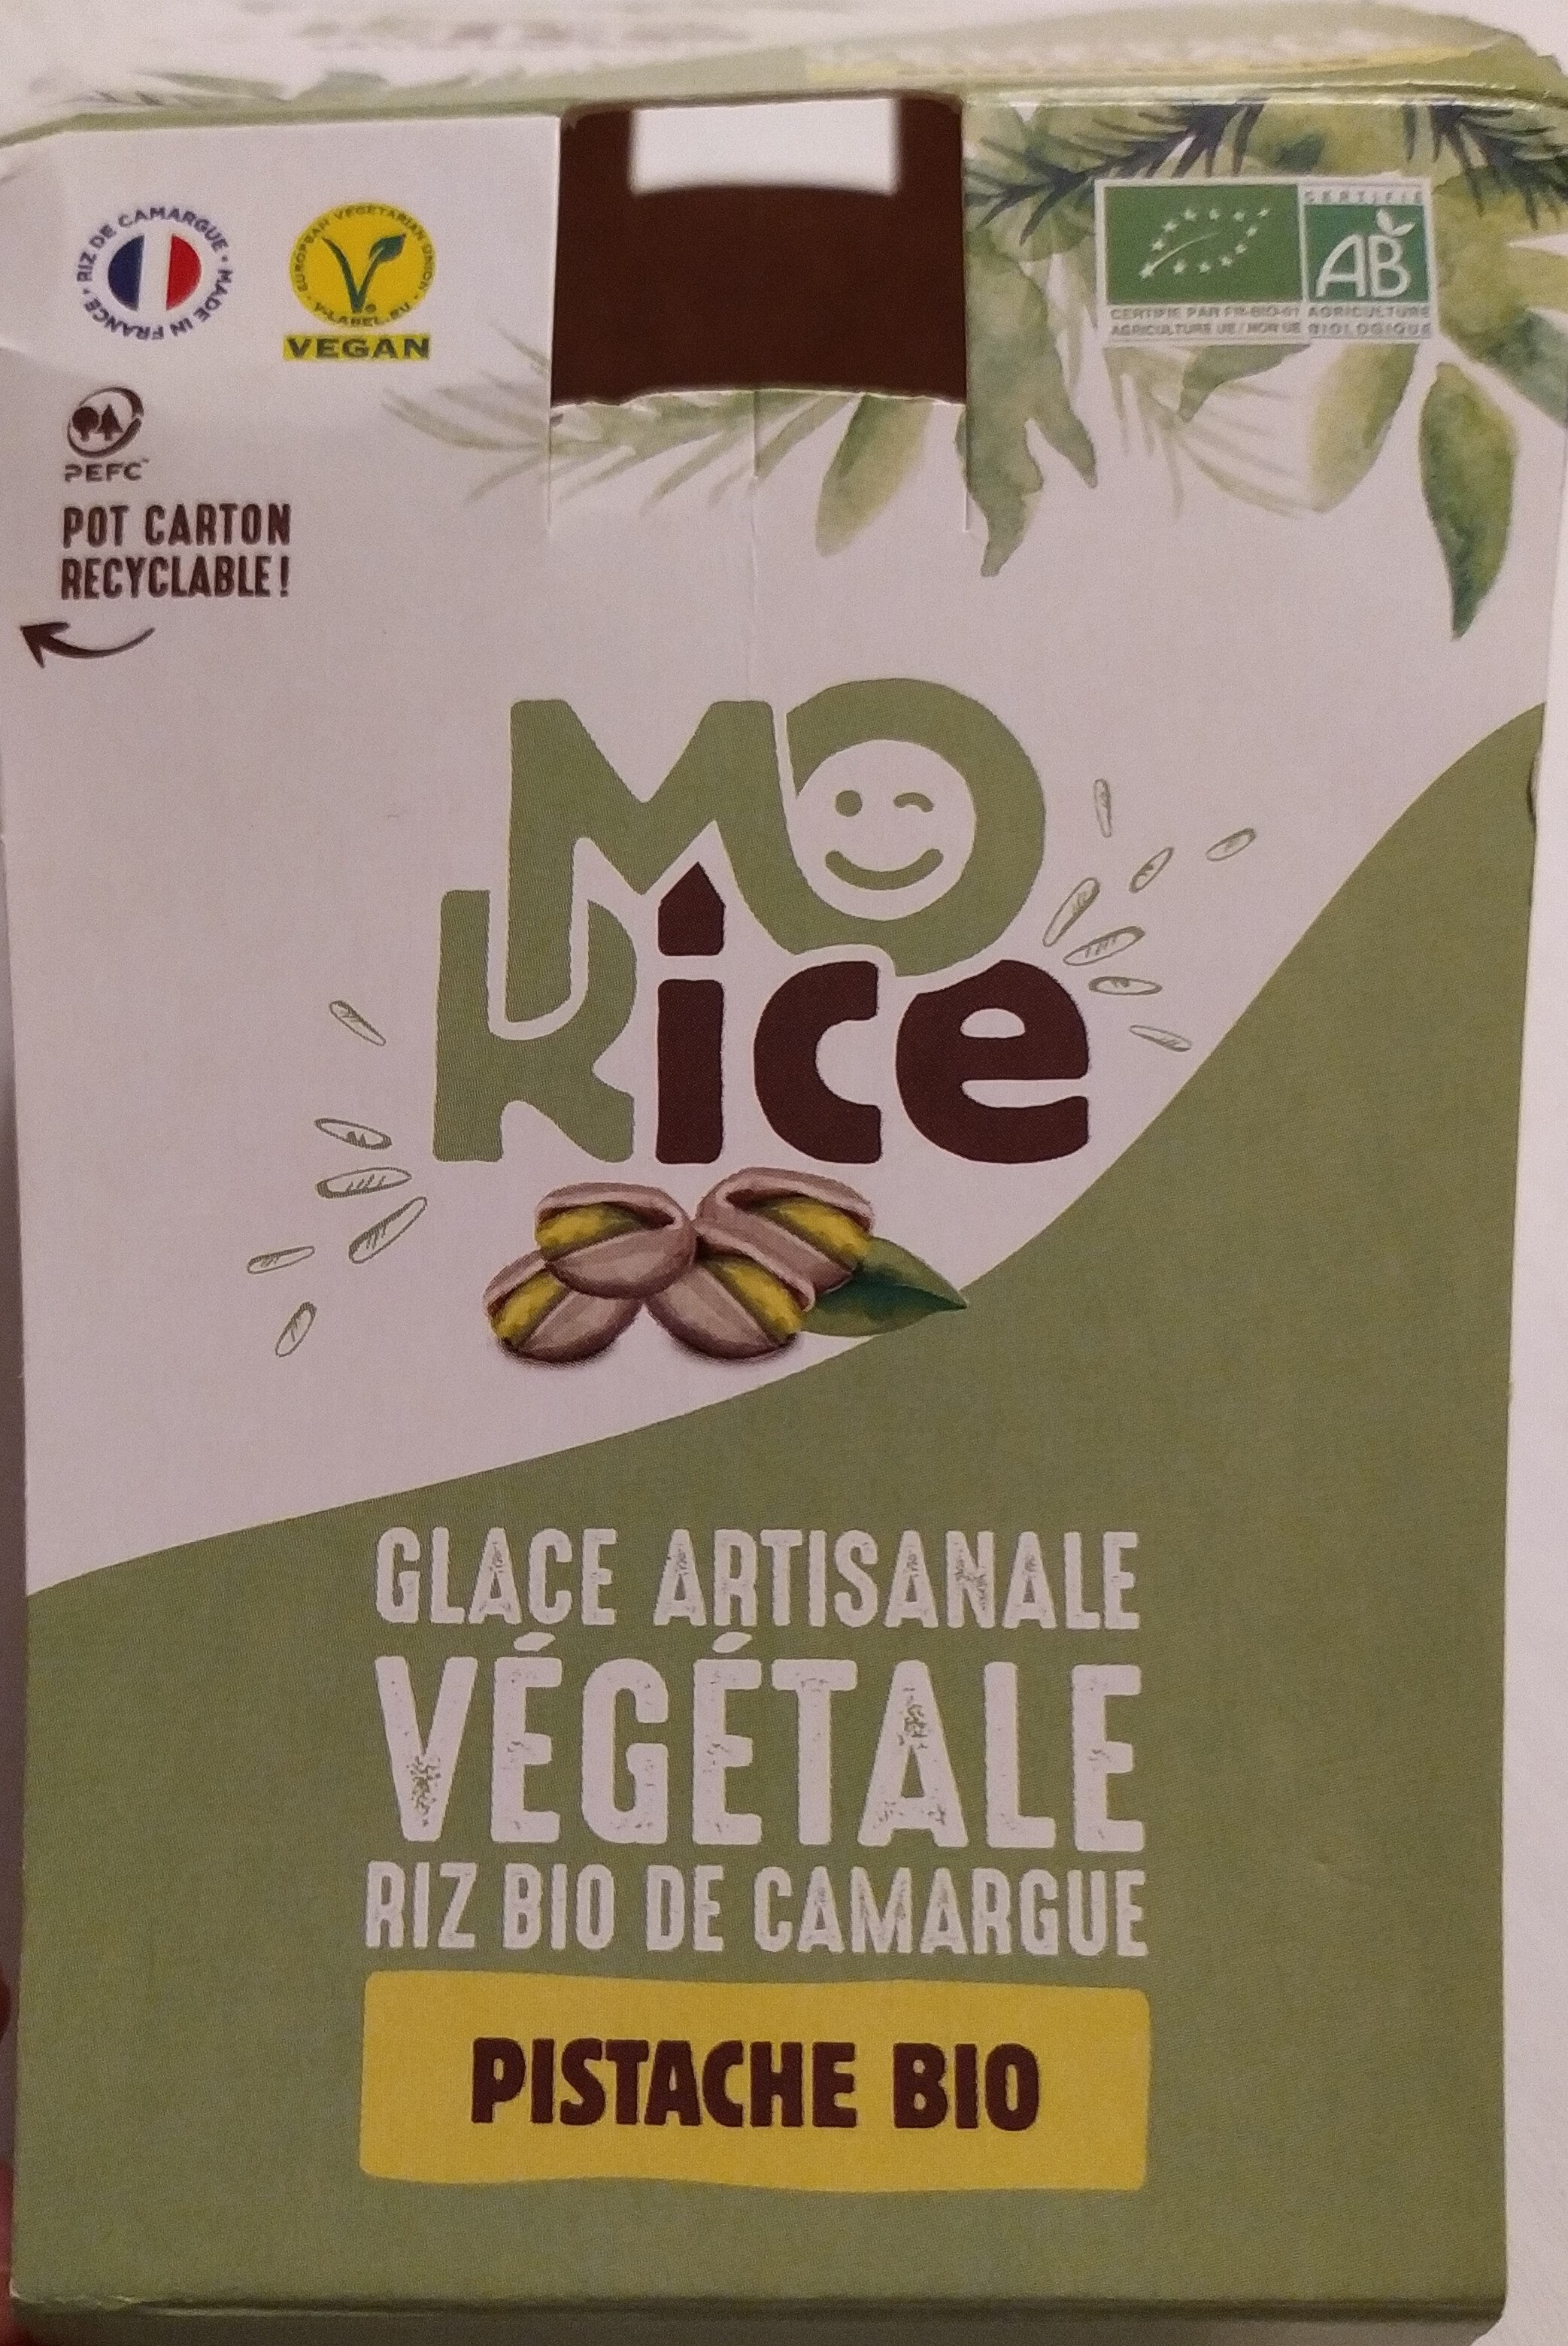 Glace artisanale végétale pistache bio - Produkt - fr